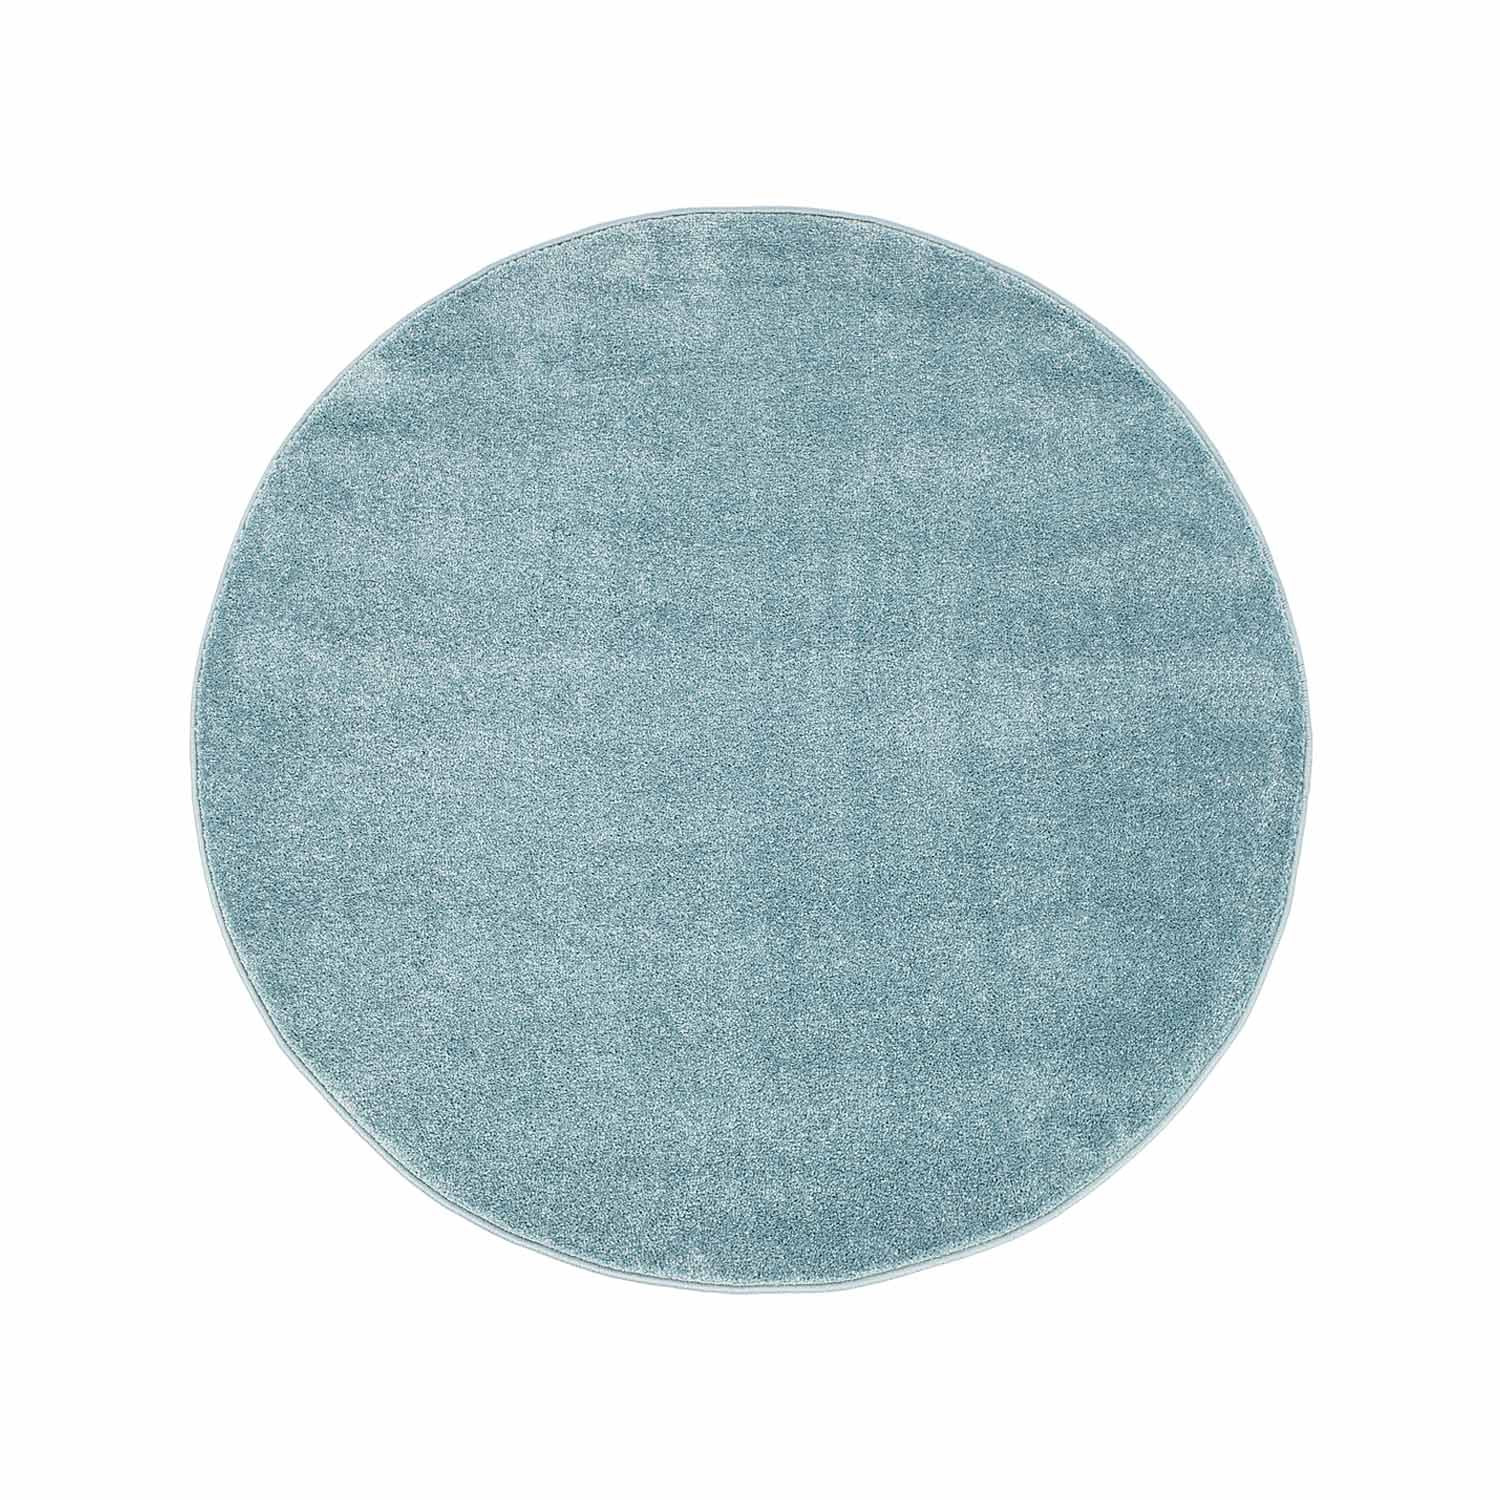 Okrągły dywan - Moda (niebieski)